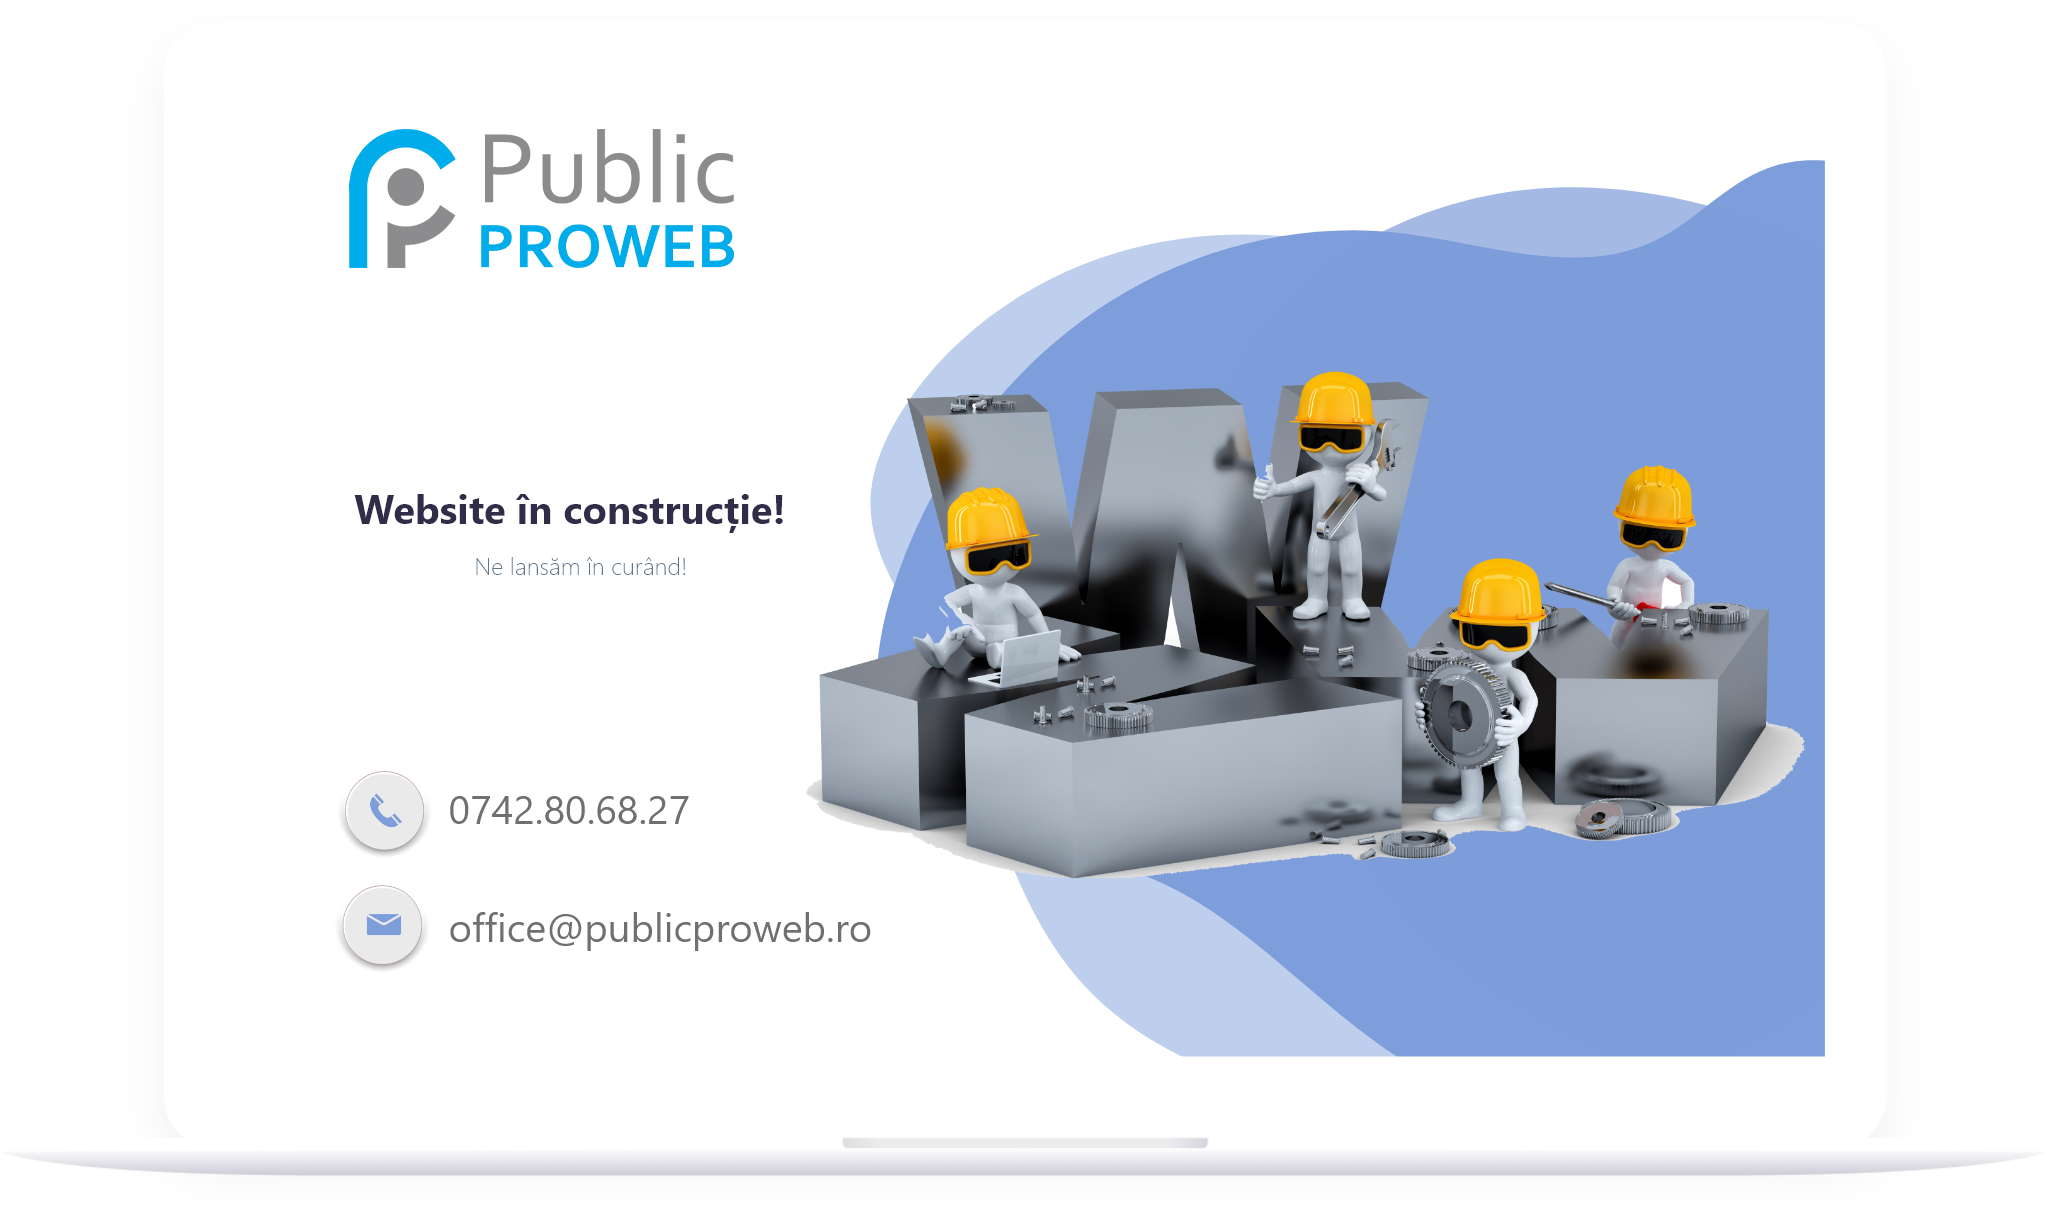 Public Pro WEB